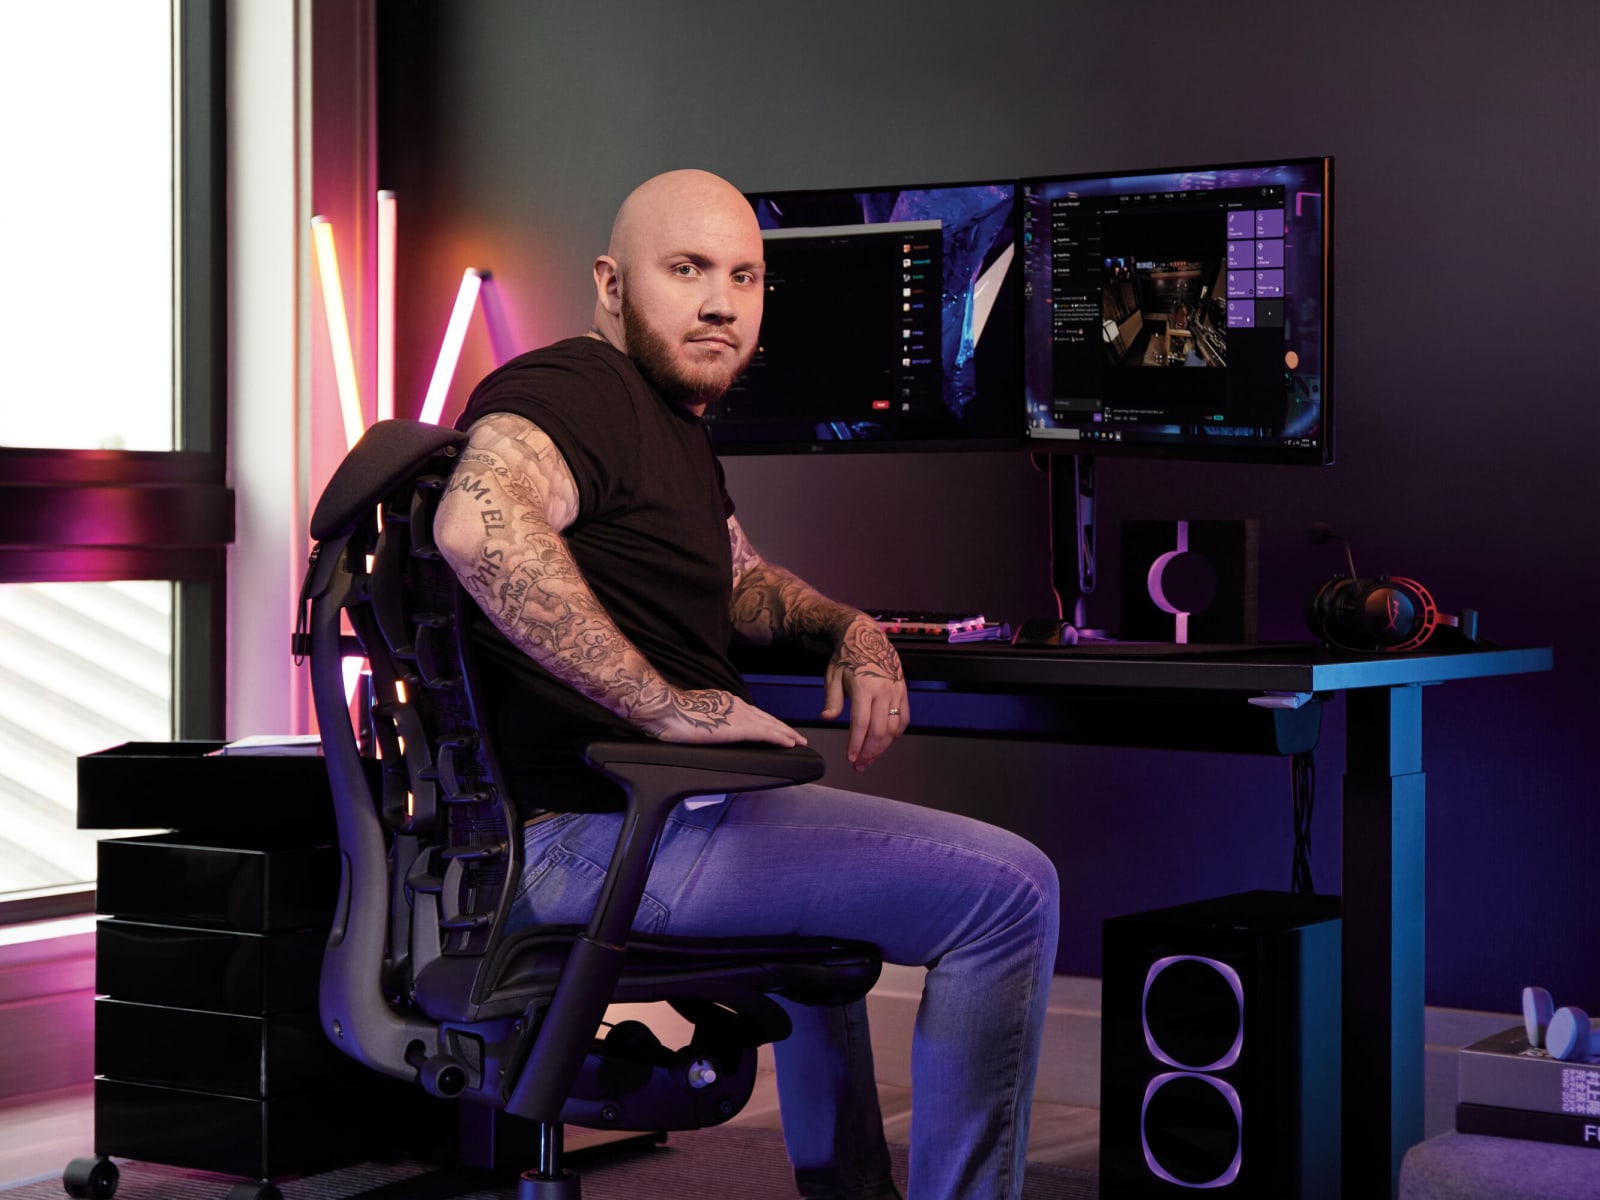 Een man die een koptelefoon draagt zit in een Gaming-stoel, is gericht naar een opstelling met een gamingtoetsenbord, muis en twee schermen.